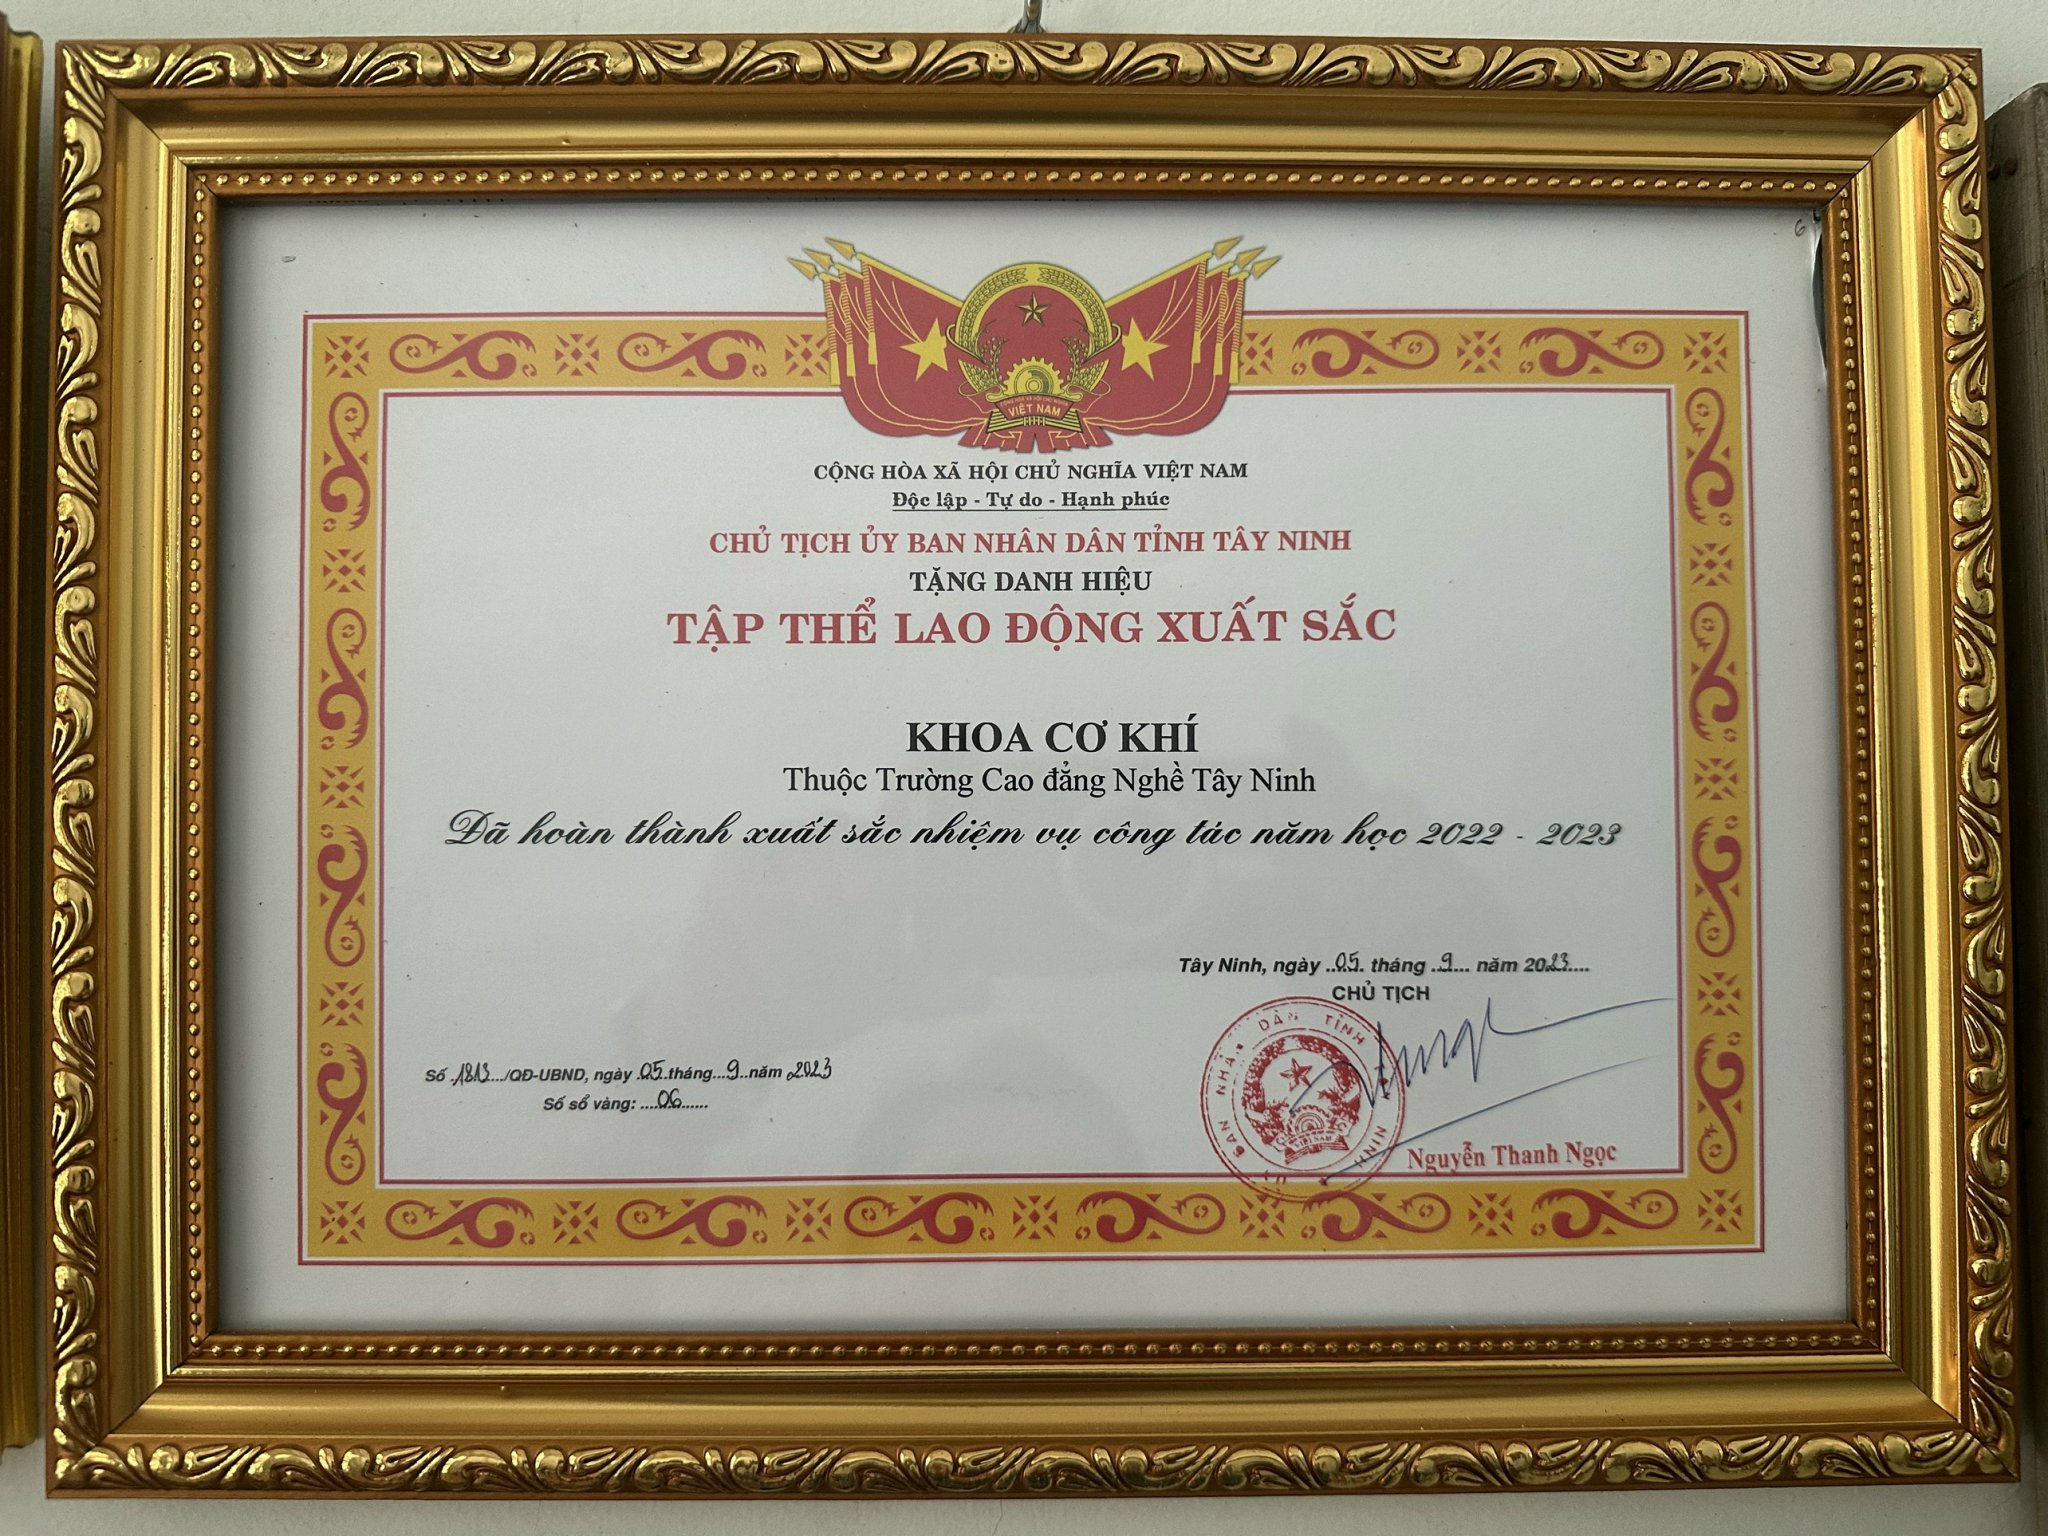 Khoa Cơ khí Trường Cao đẳng nghề Tây Ninh nhận Danh hiệu Tập thể lao động xuất sắc năm học 2022-2023 của Chủ tịch UBND tỉnh Tây Ninh